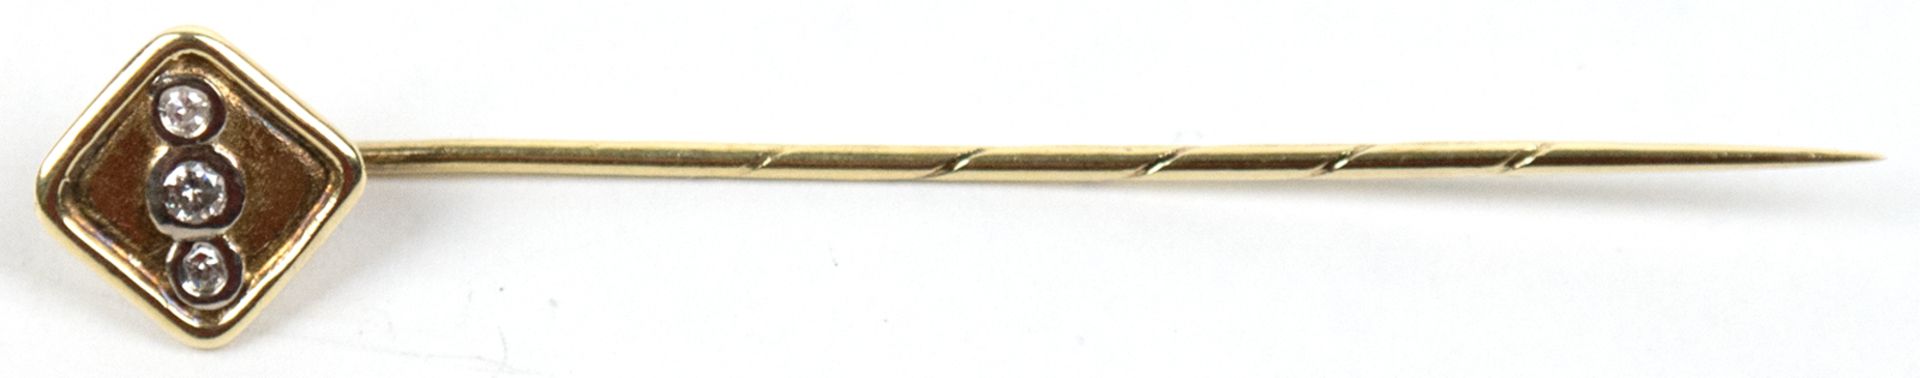 Krawattennadel, 14 k GG, mit 3 Diamanten besetzt, ges. 1,9 g, L. 6,2 cm